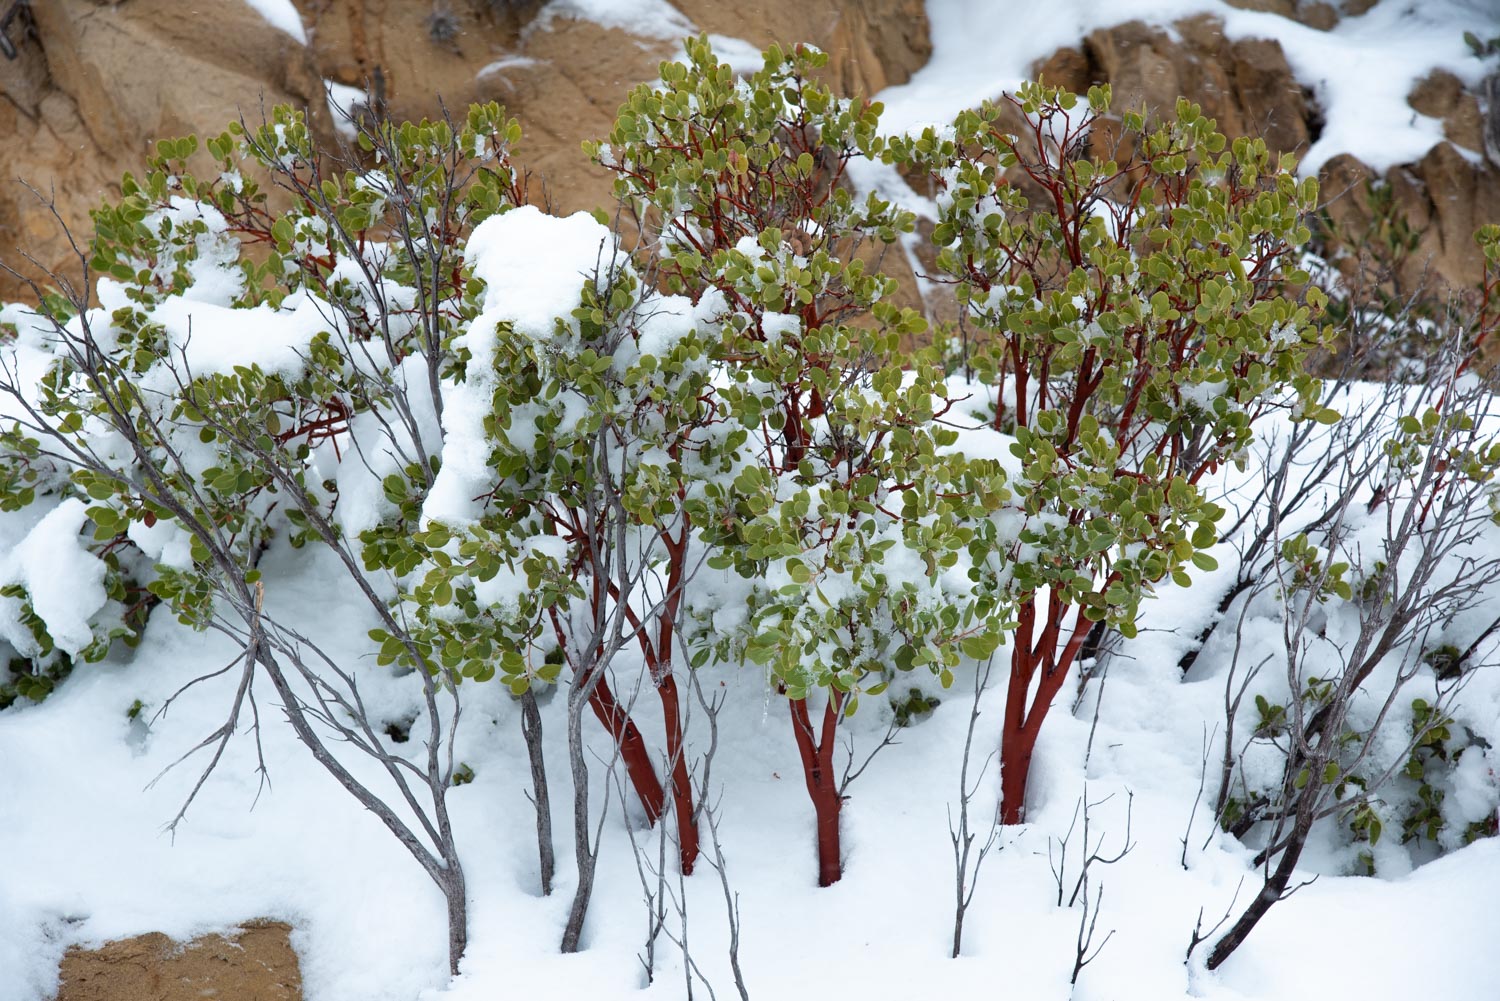 Manzanita (Arctostaphylos sp.) En la nieve